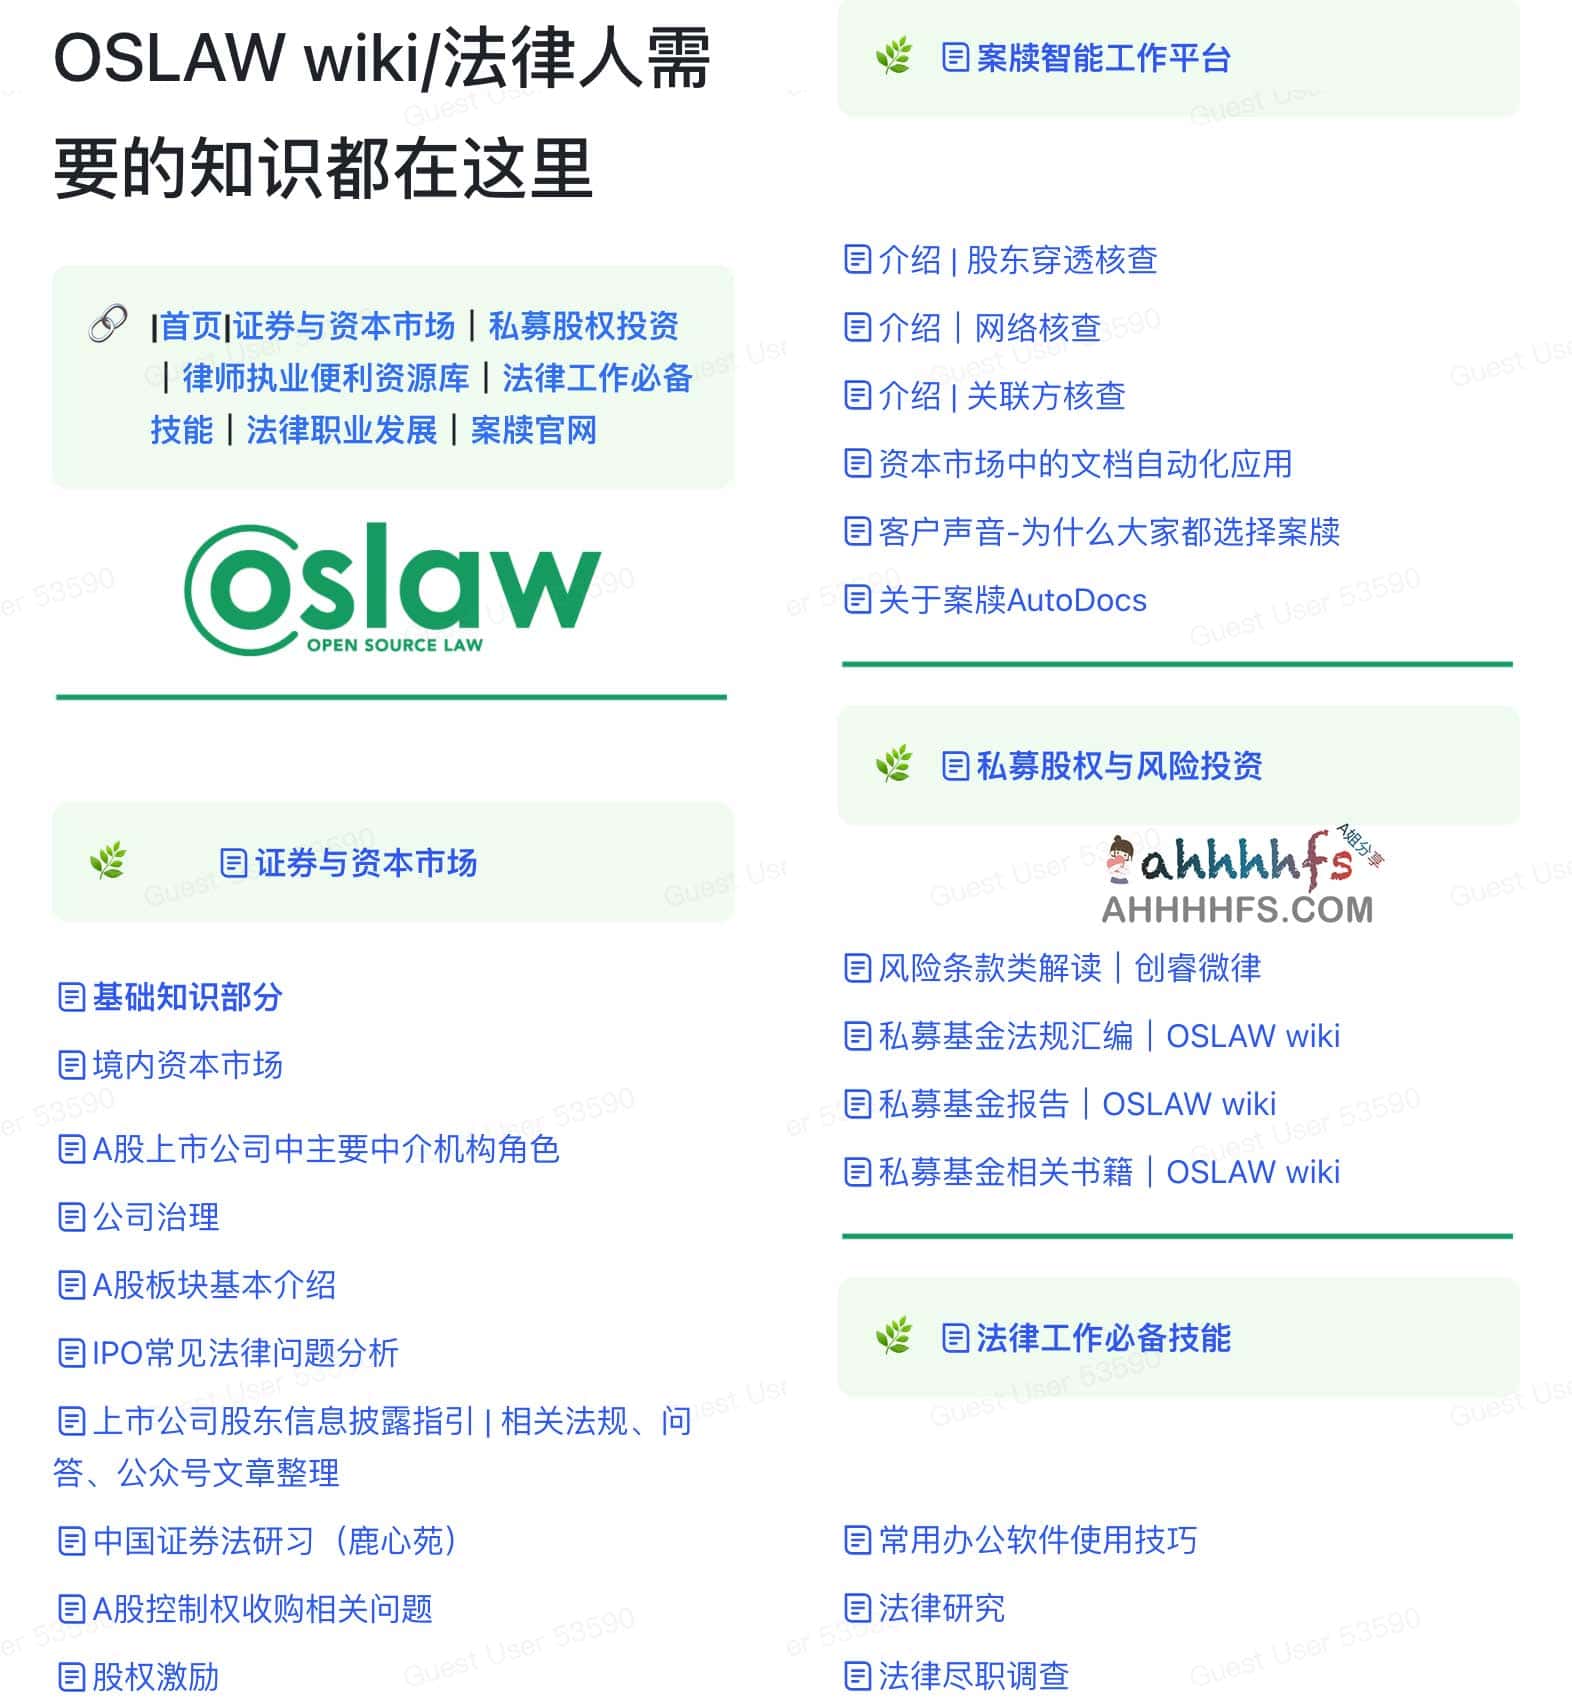 OSLAW wiki-在线法律人专业知识库